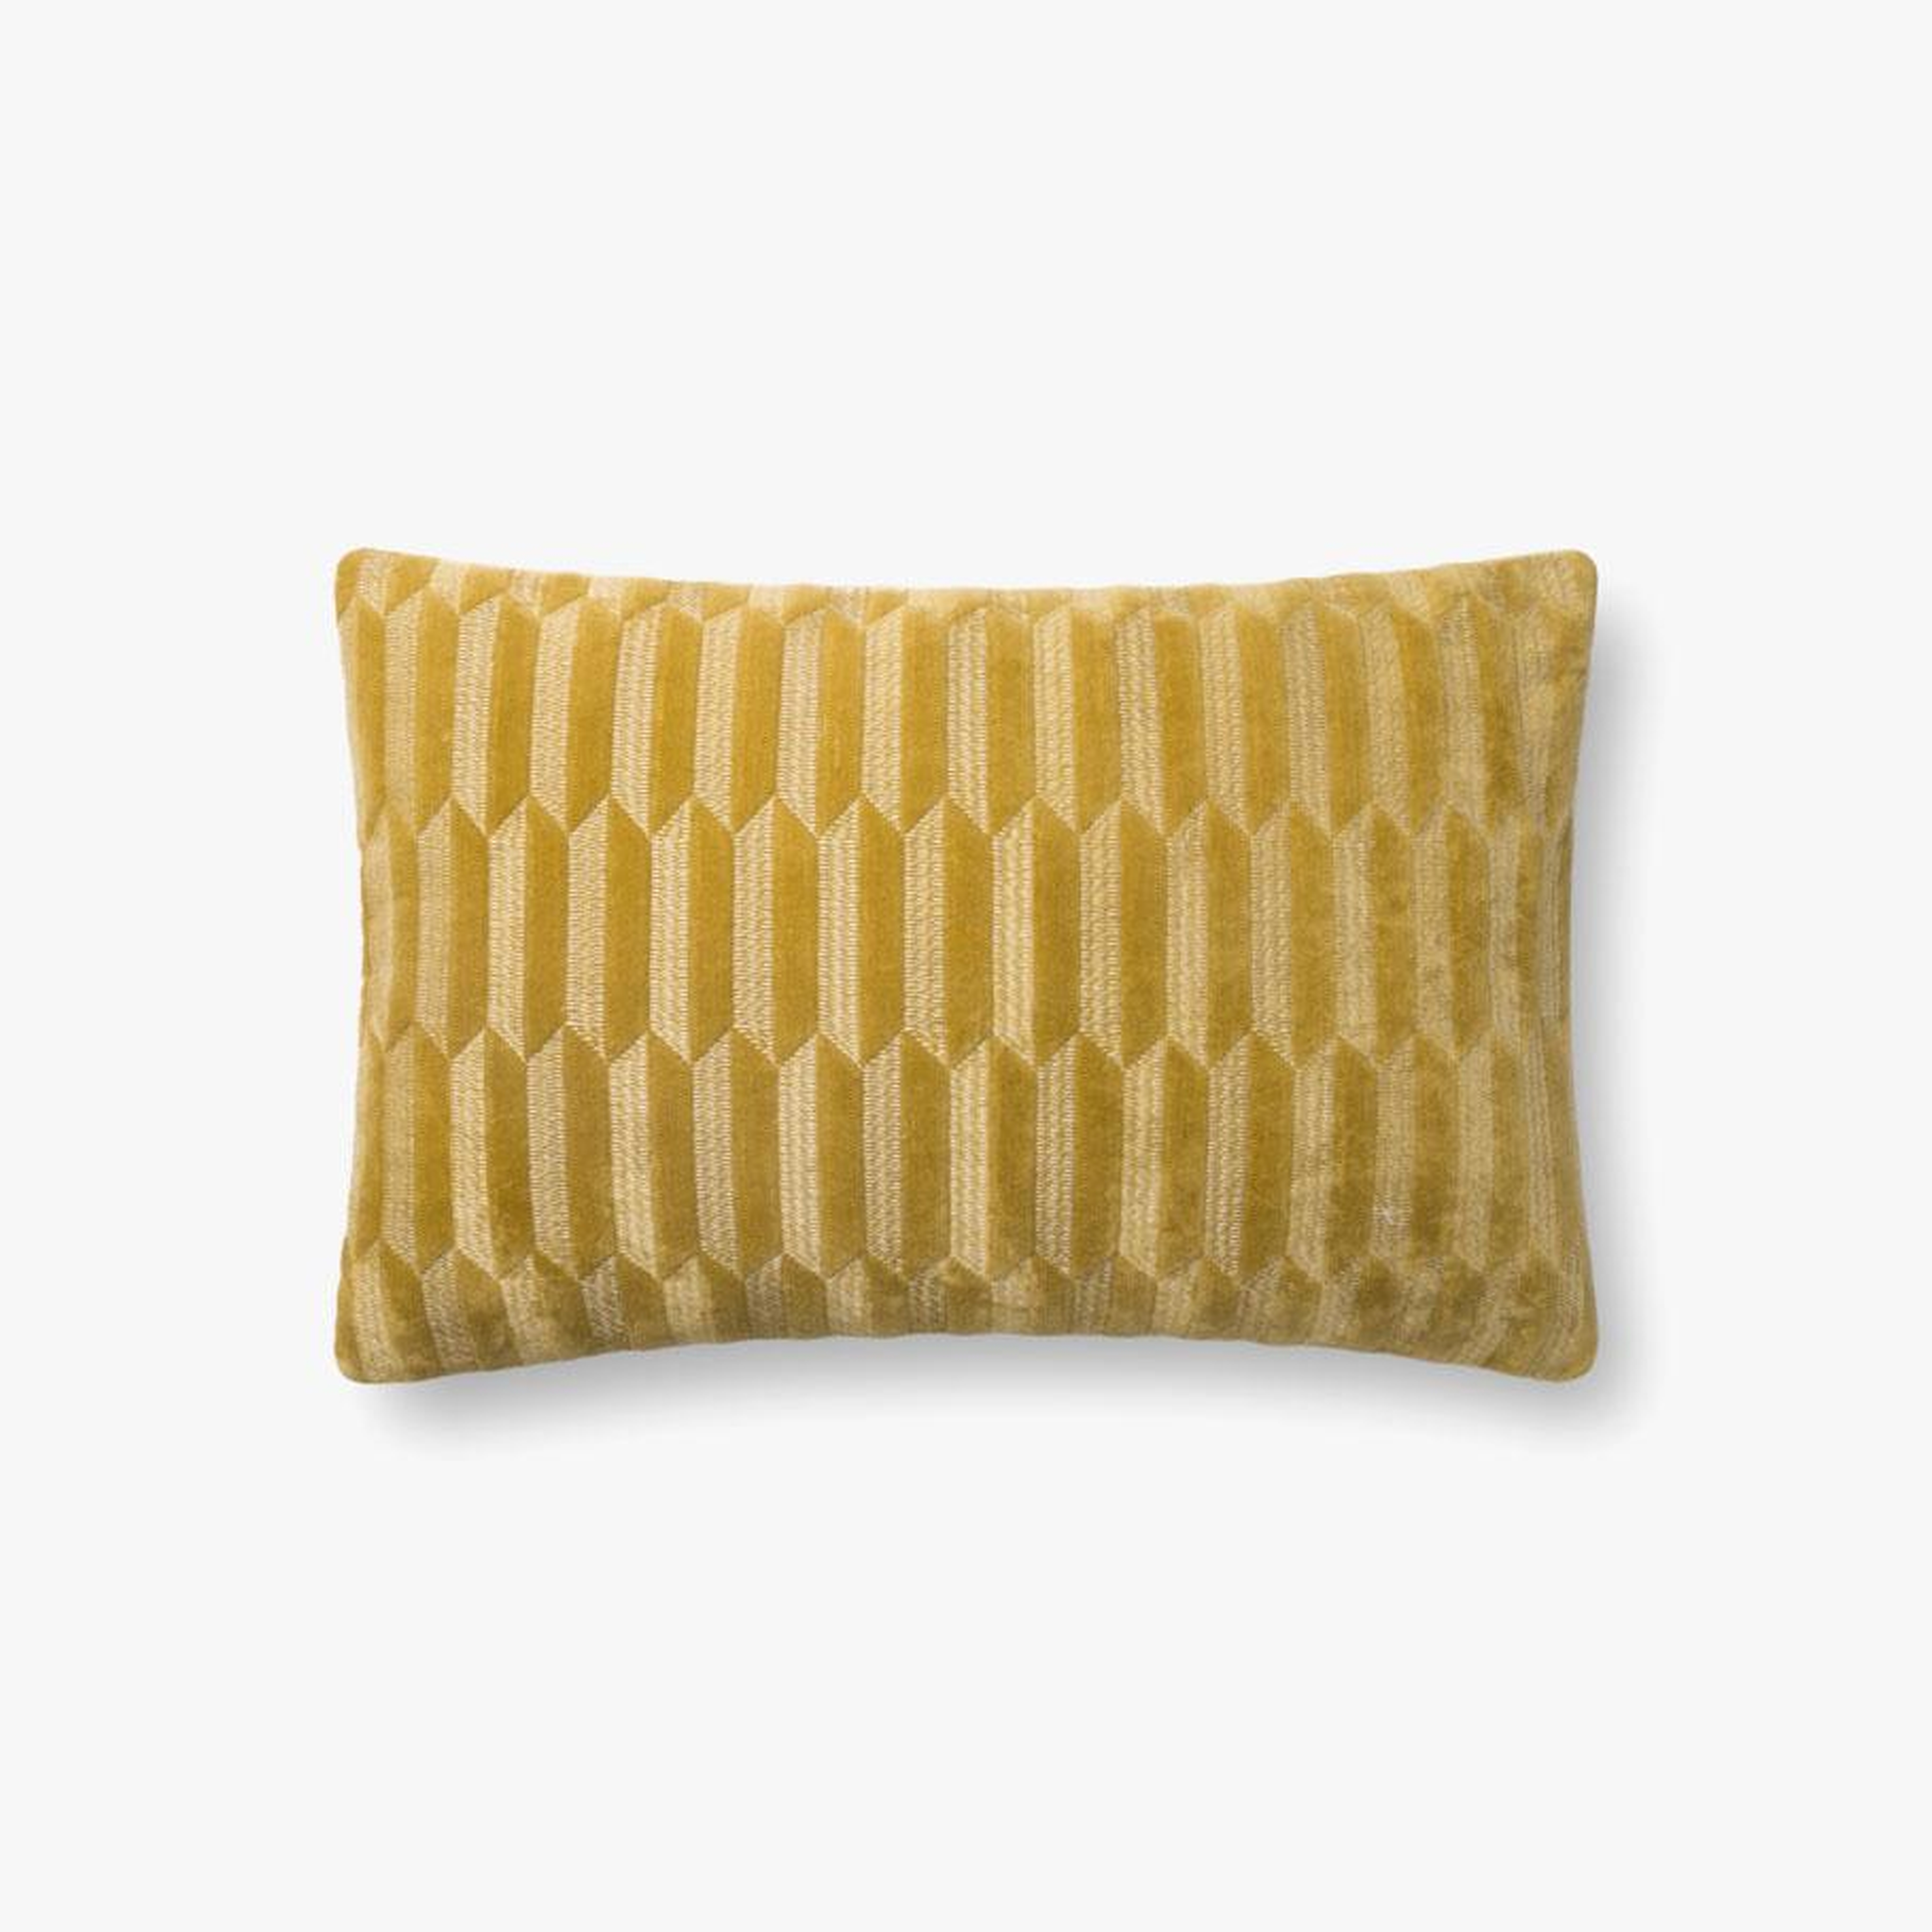 Art Deco Lumbar Pillow, Poly Fill, Yellow, 21" x 13" - Loloi Rugs